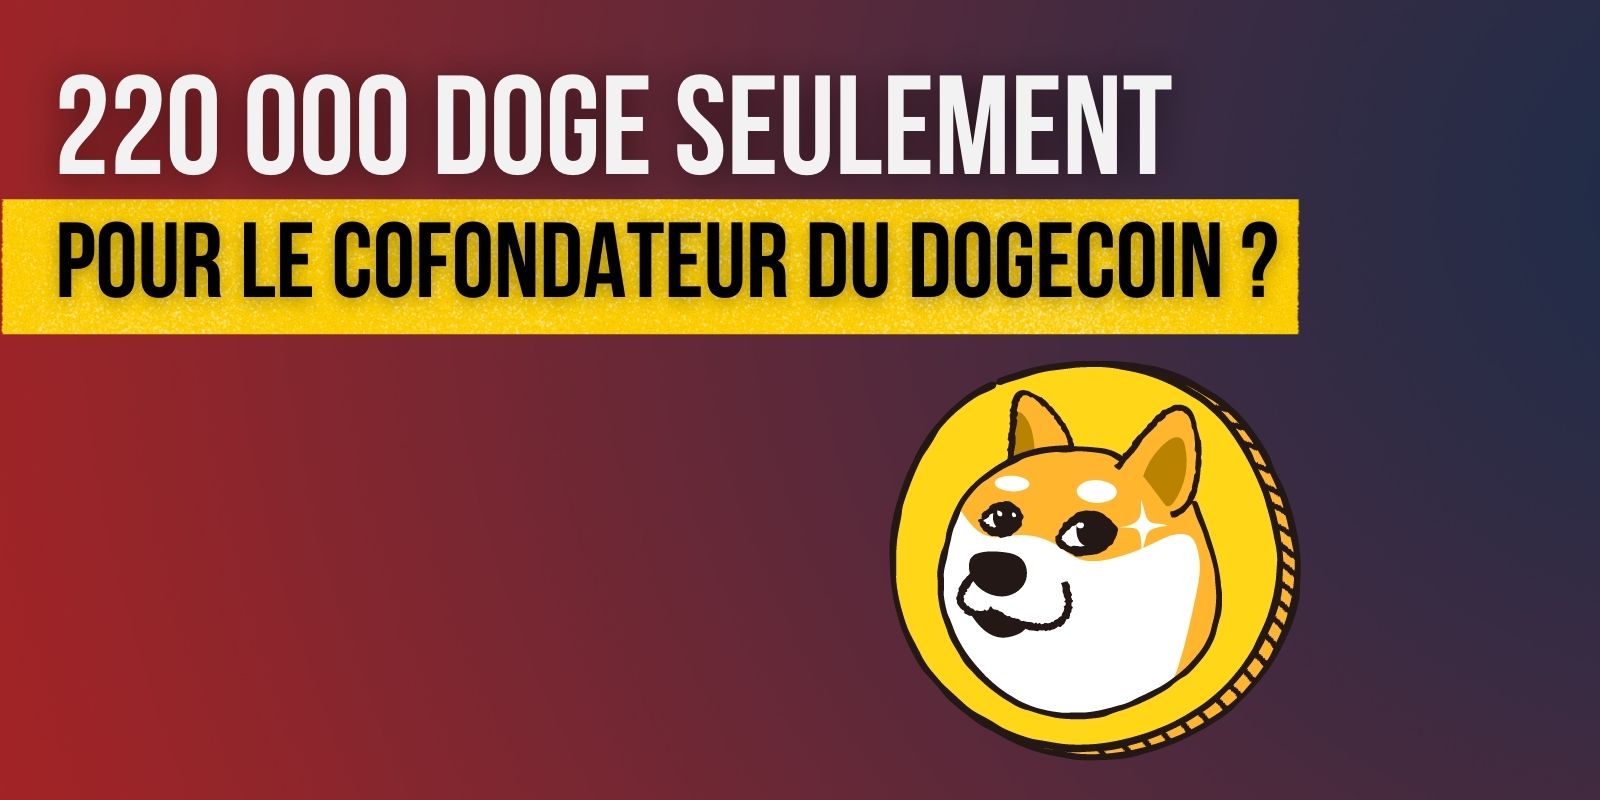 Billy Markus, cofondateur du Dogecoin, ne détiendrait que 220 000 DOGE